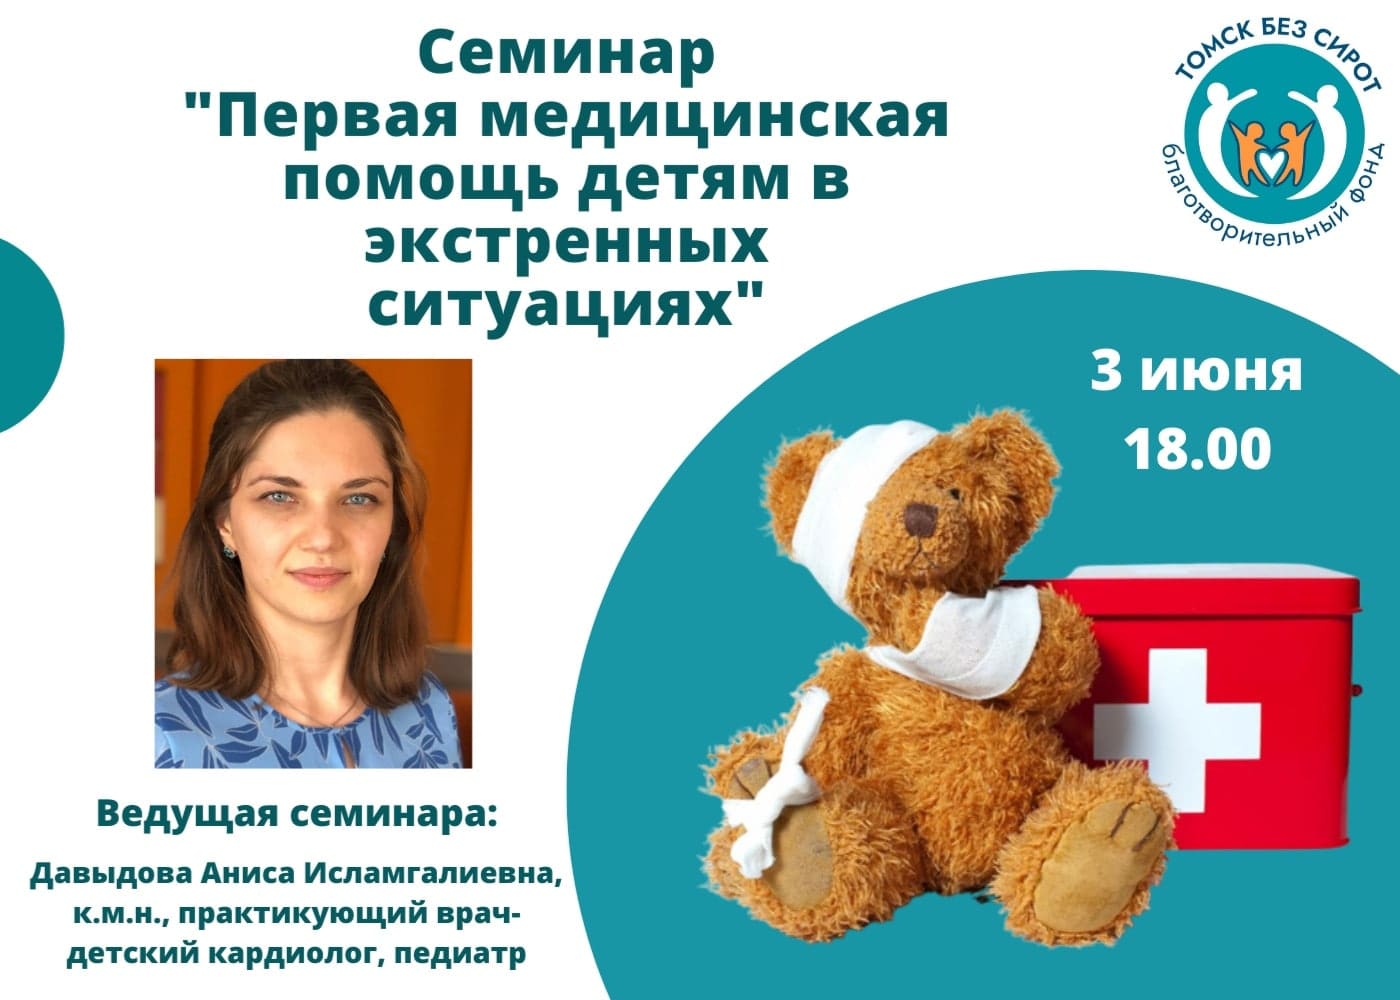 Благотворительность, Томские новости, благотворительность сироты томск новости интересное В Томске пройдет семинар по оказанию первой медицинской помощи детям